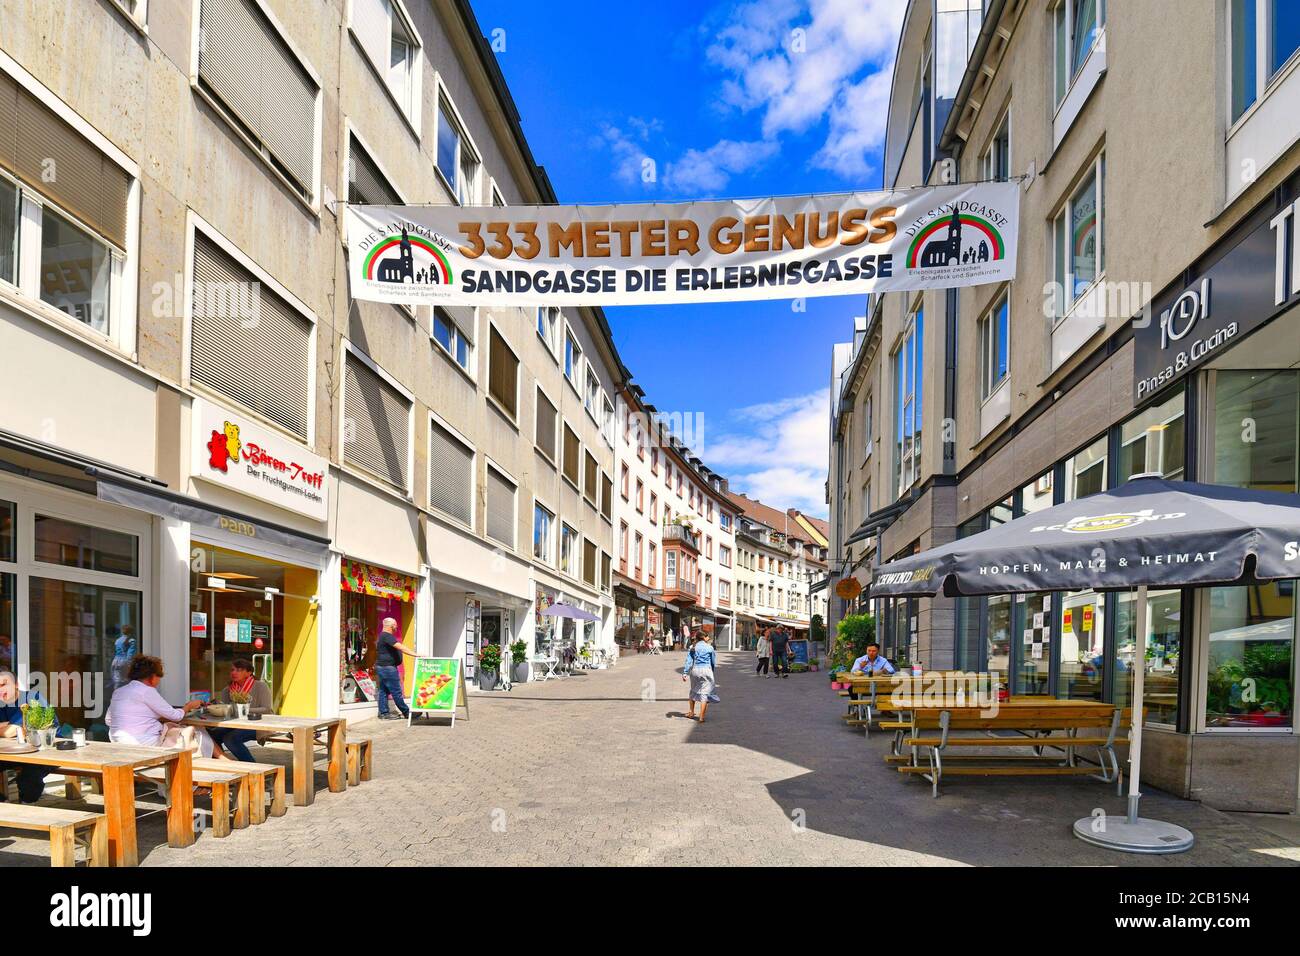 Aschaffenburg, Germania - Luglio 2020: Strada turistica con un anner che dice 'vicolo di andgasse - il vicolo di esperienza' nel centro storico della città il giorno d'estate Foto Stock